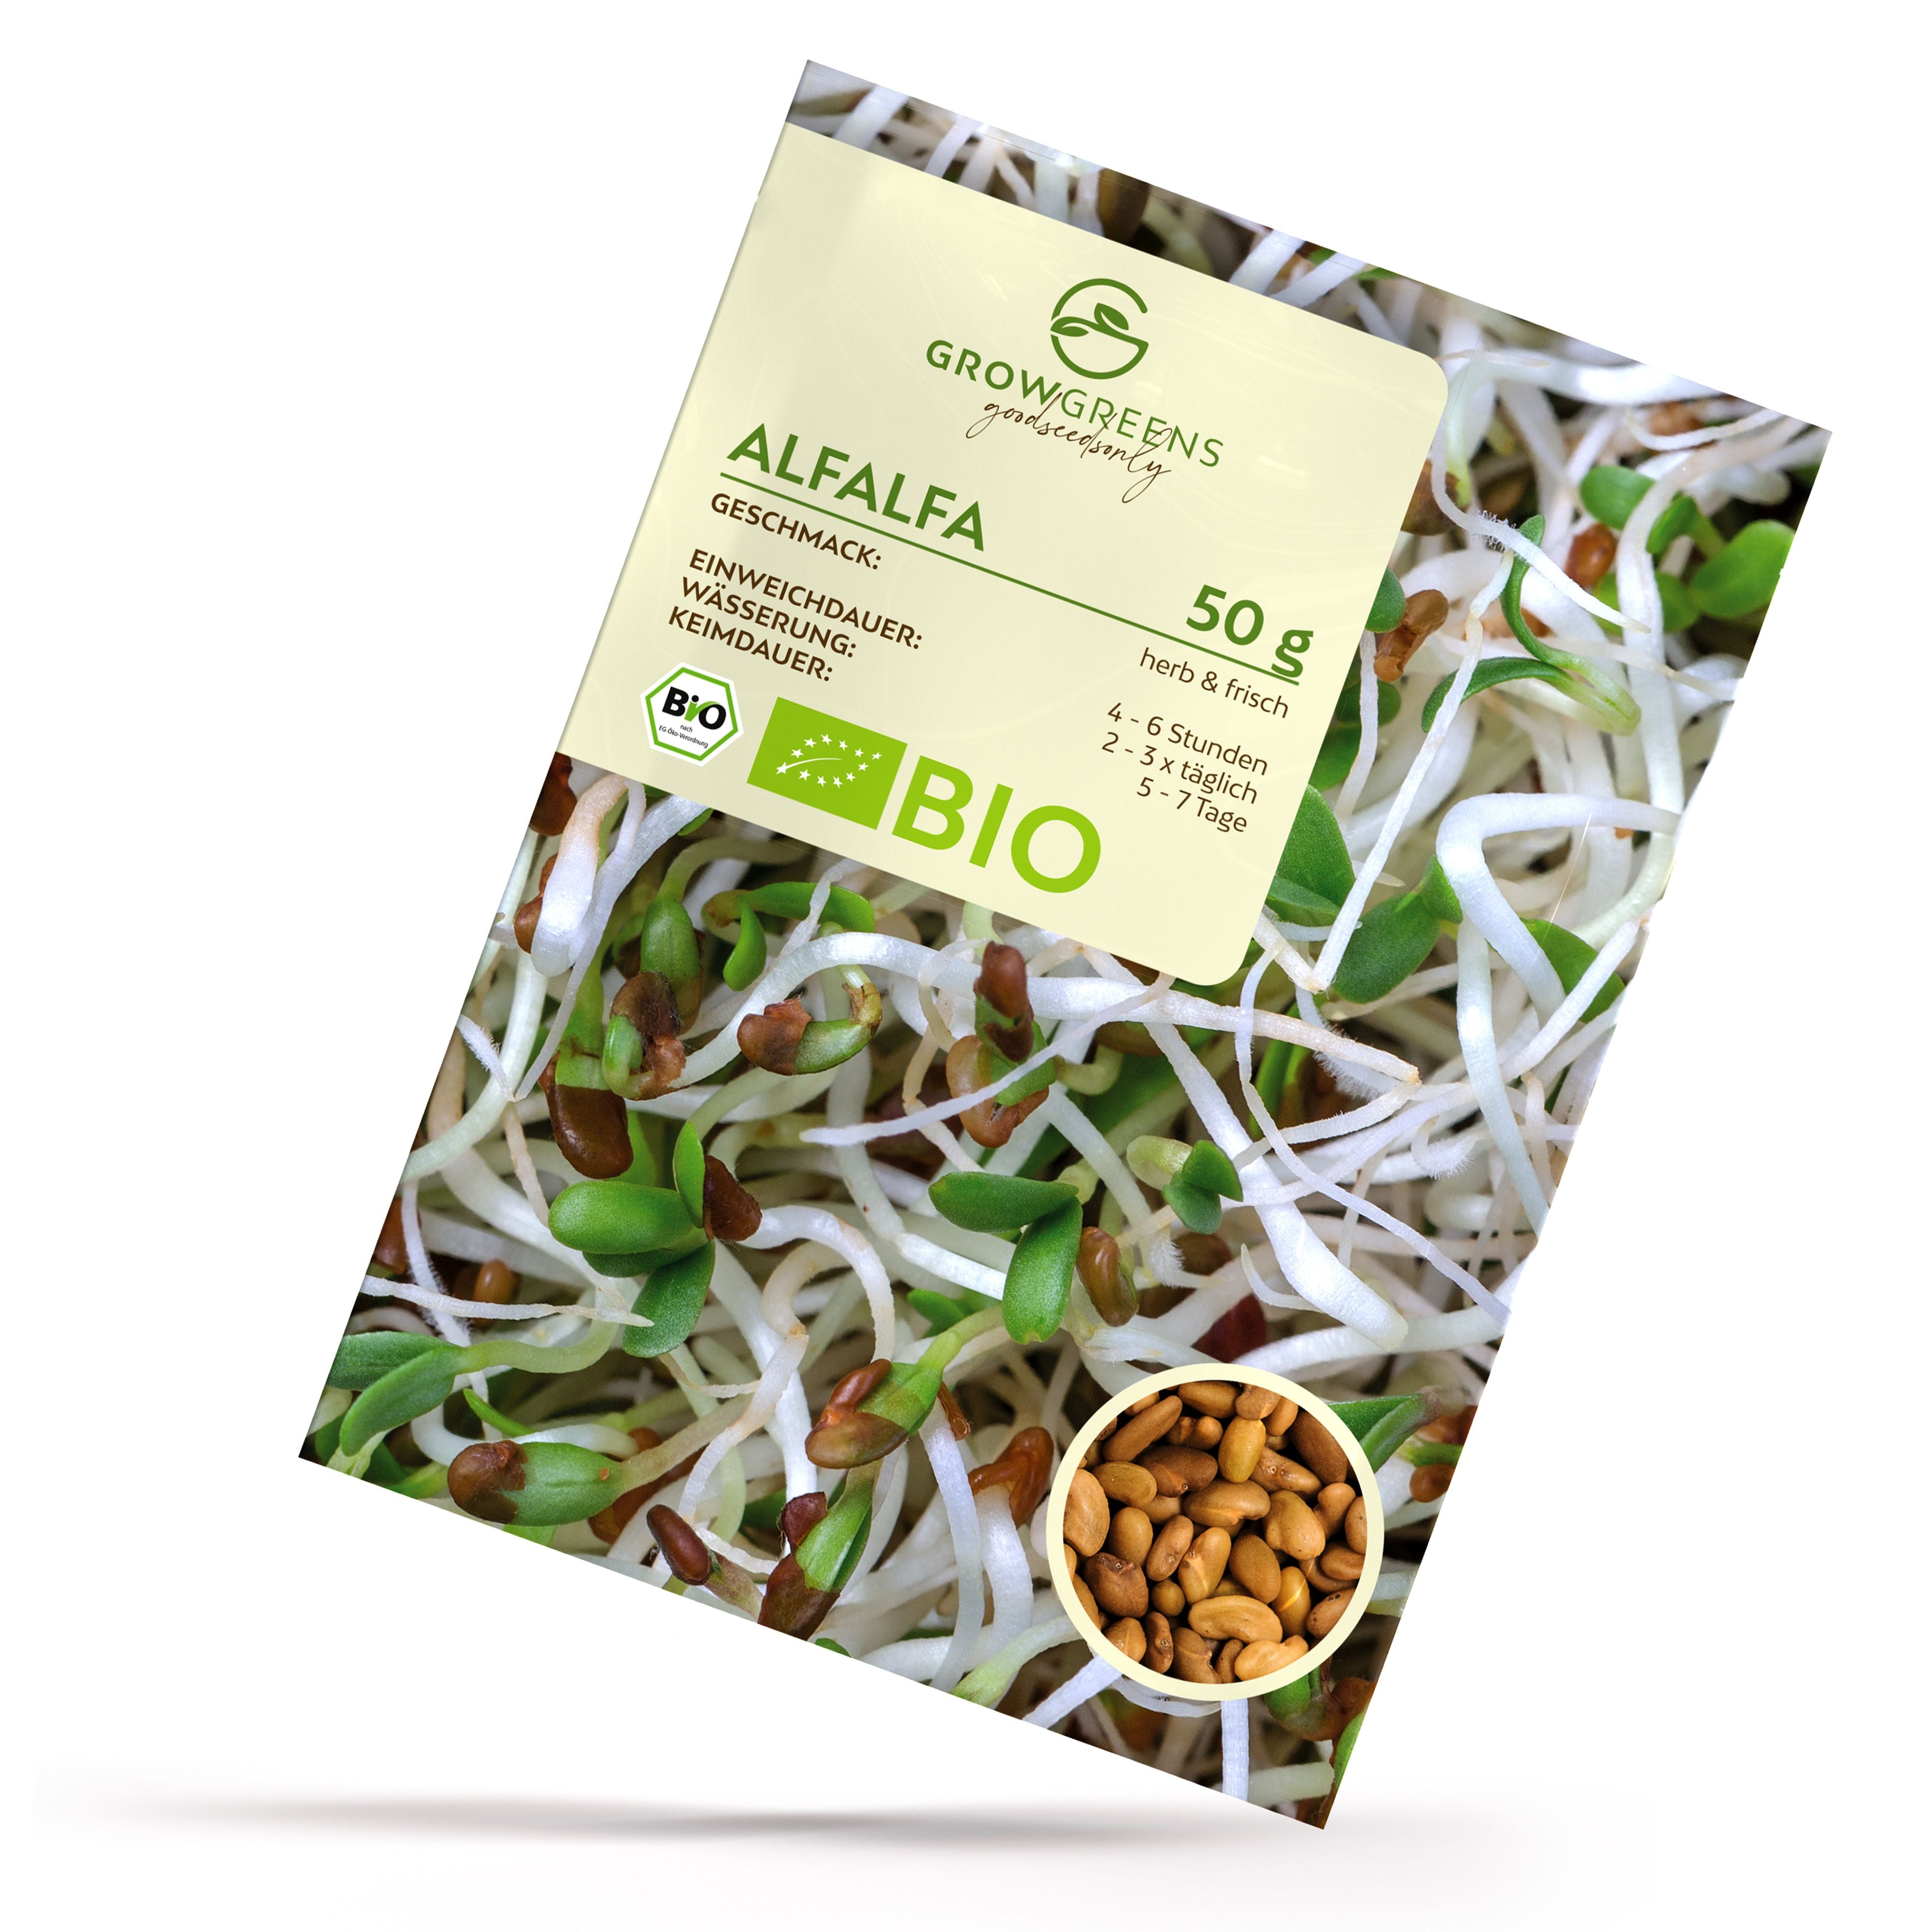 BIO Alfalfa Sprossen Samen (50g) - Microgreens Saatgut ideal für die Anzucht von knackigen Keimsprossen